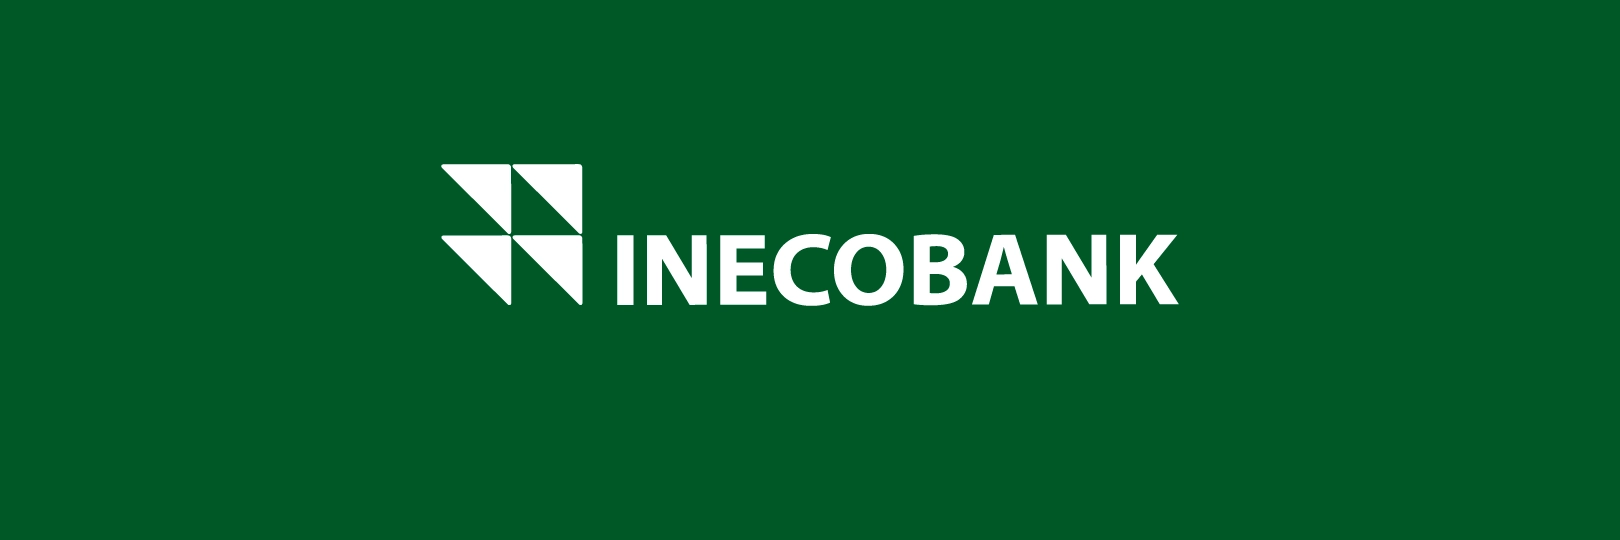 5762-inecobank-indigo-01.png